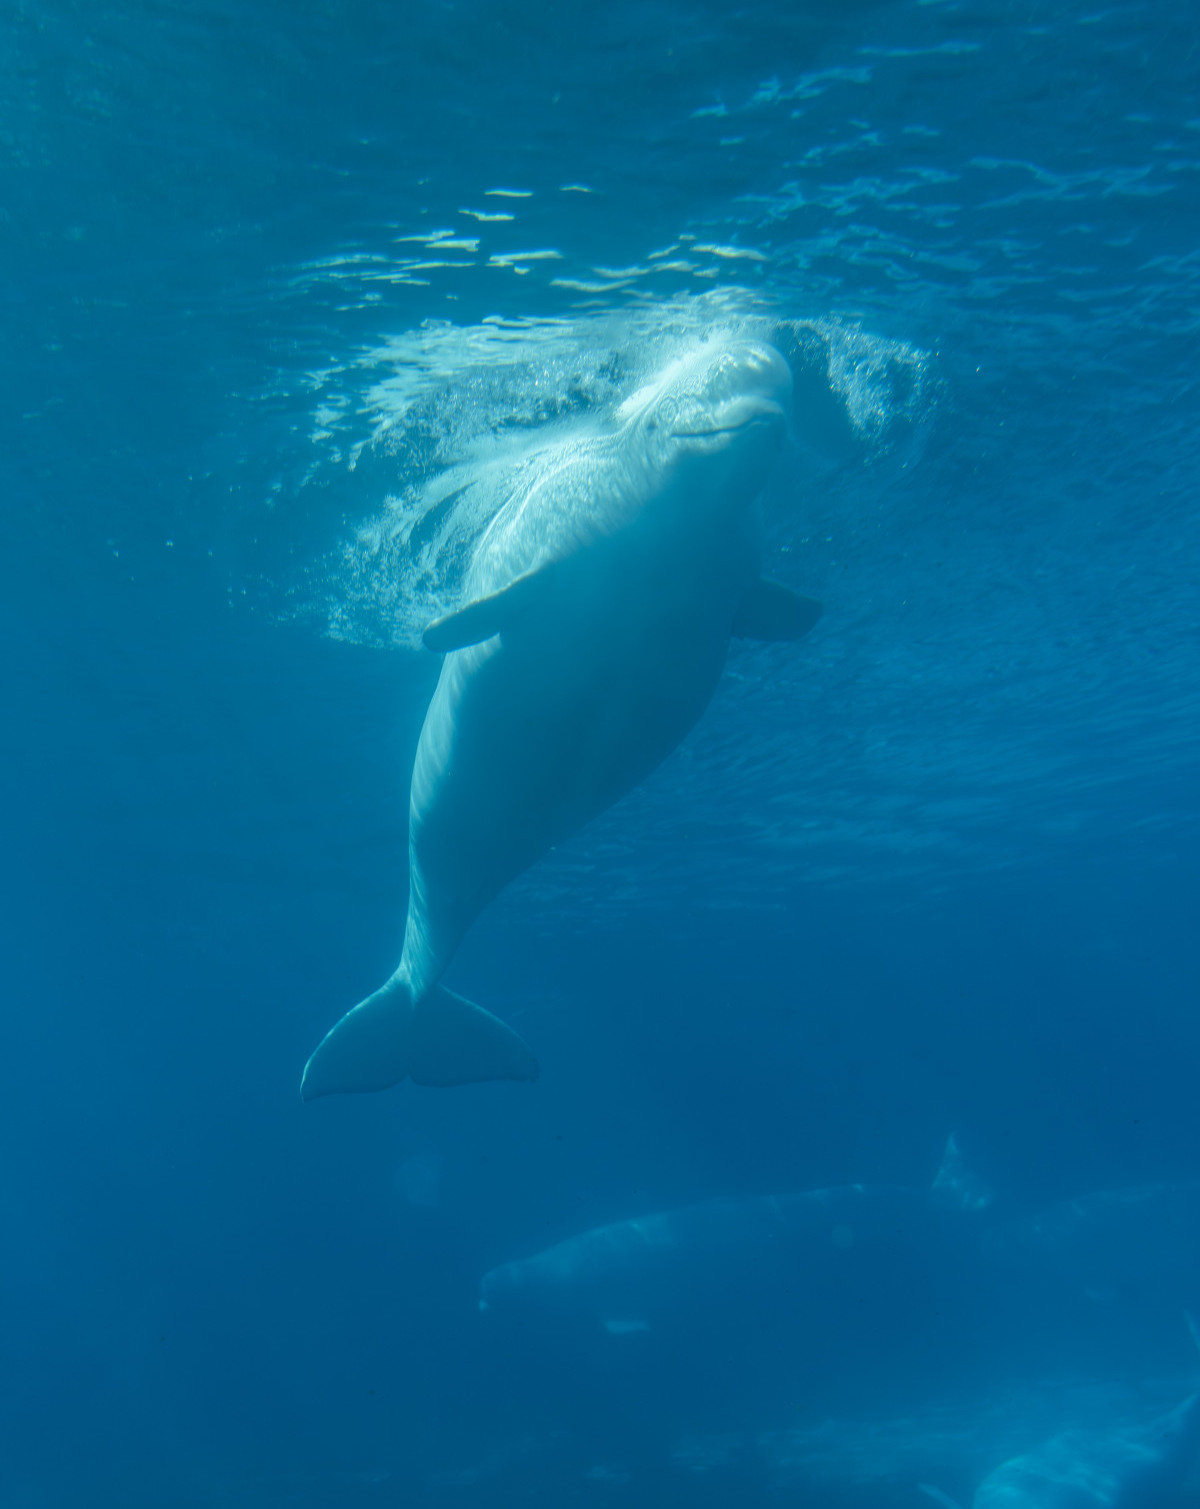 Captive beluga whales at Marineland